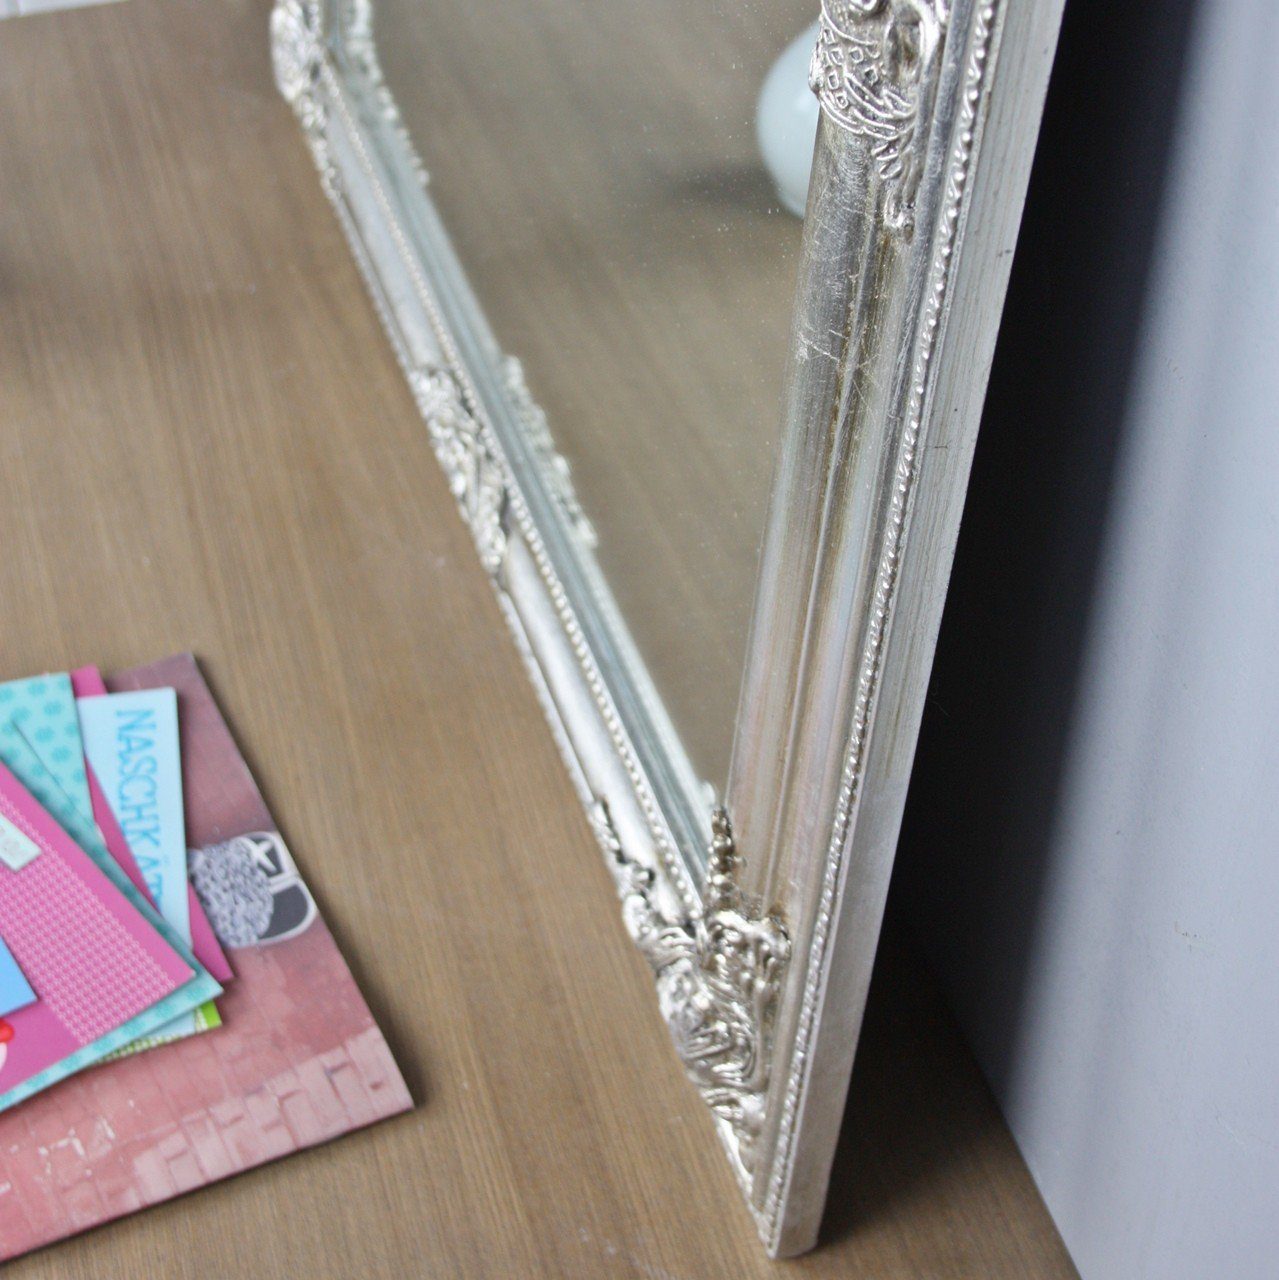 Eleganter im Wandspiegel elbmöbel Spiegel Spiegel: Anblick Landhaus silber Look barock, Wandspiegel Vintage